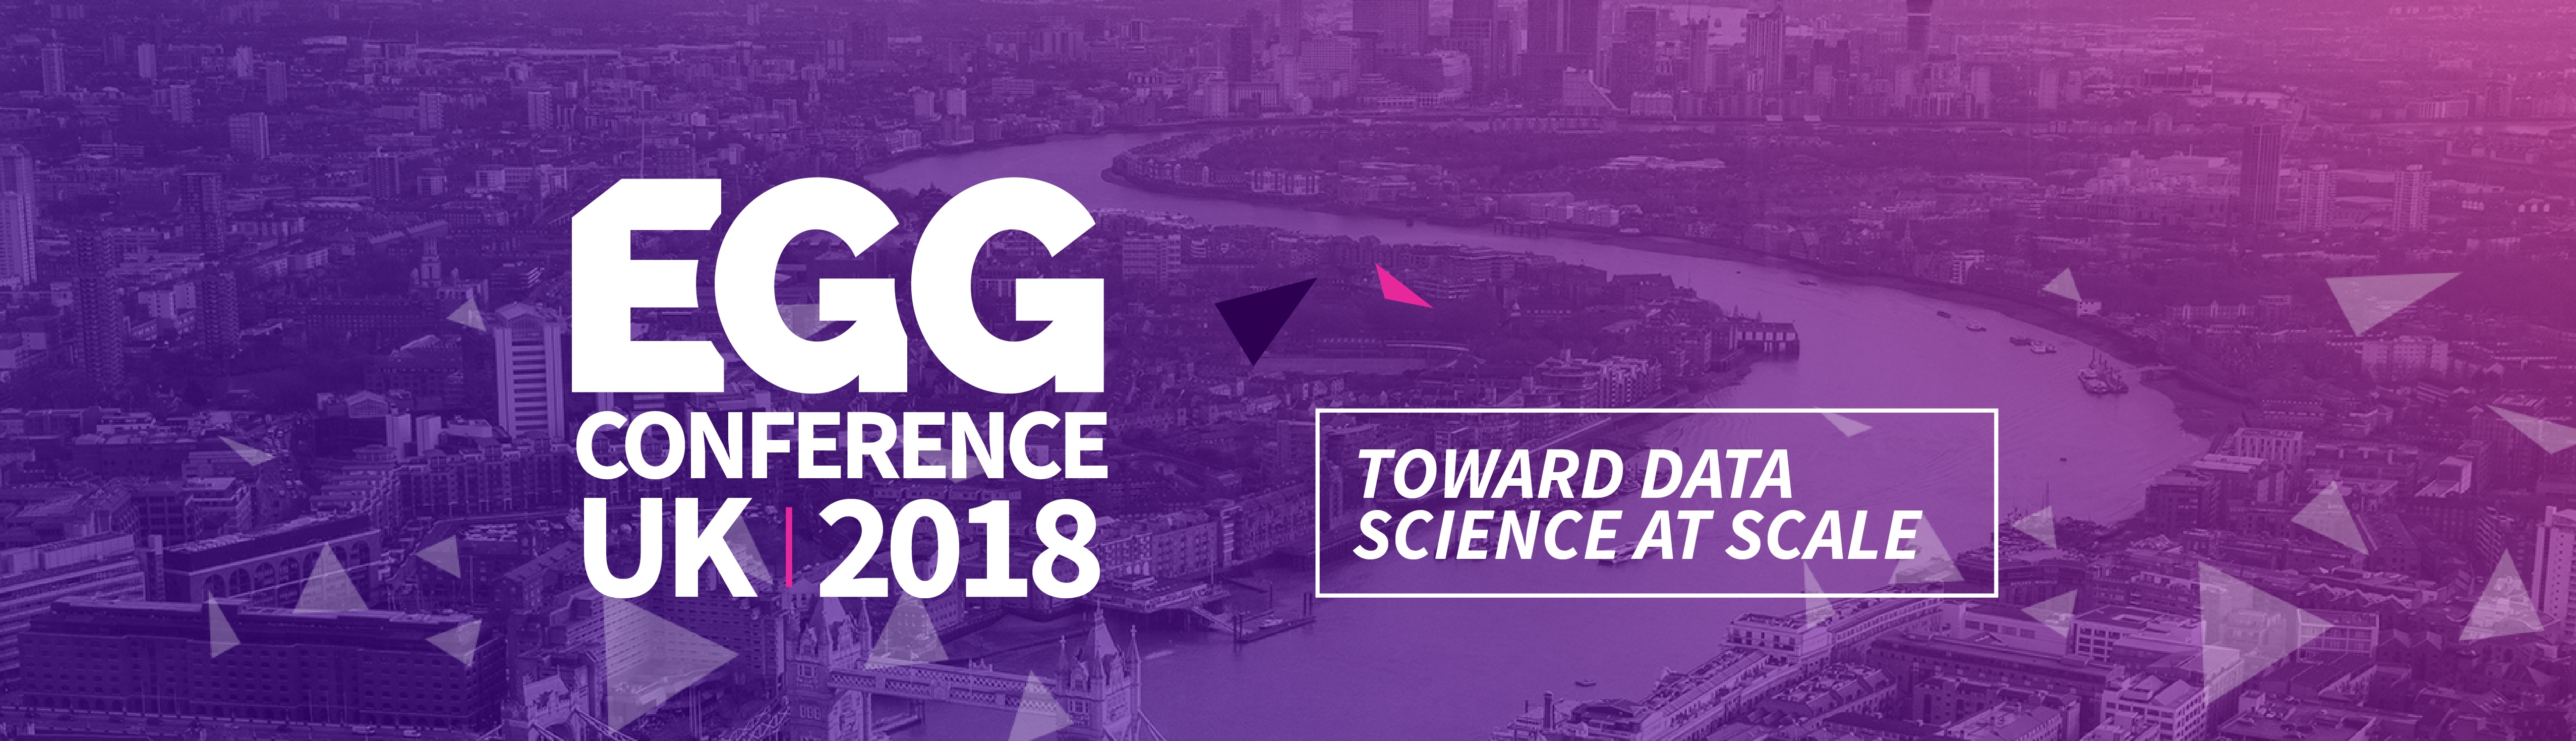 EGG UK 2018 banner logo